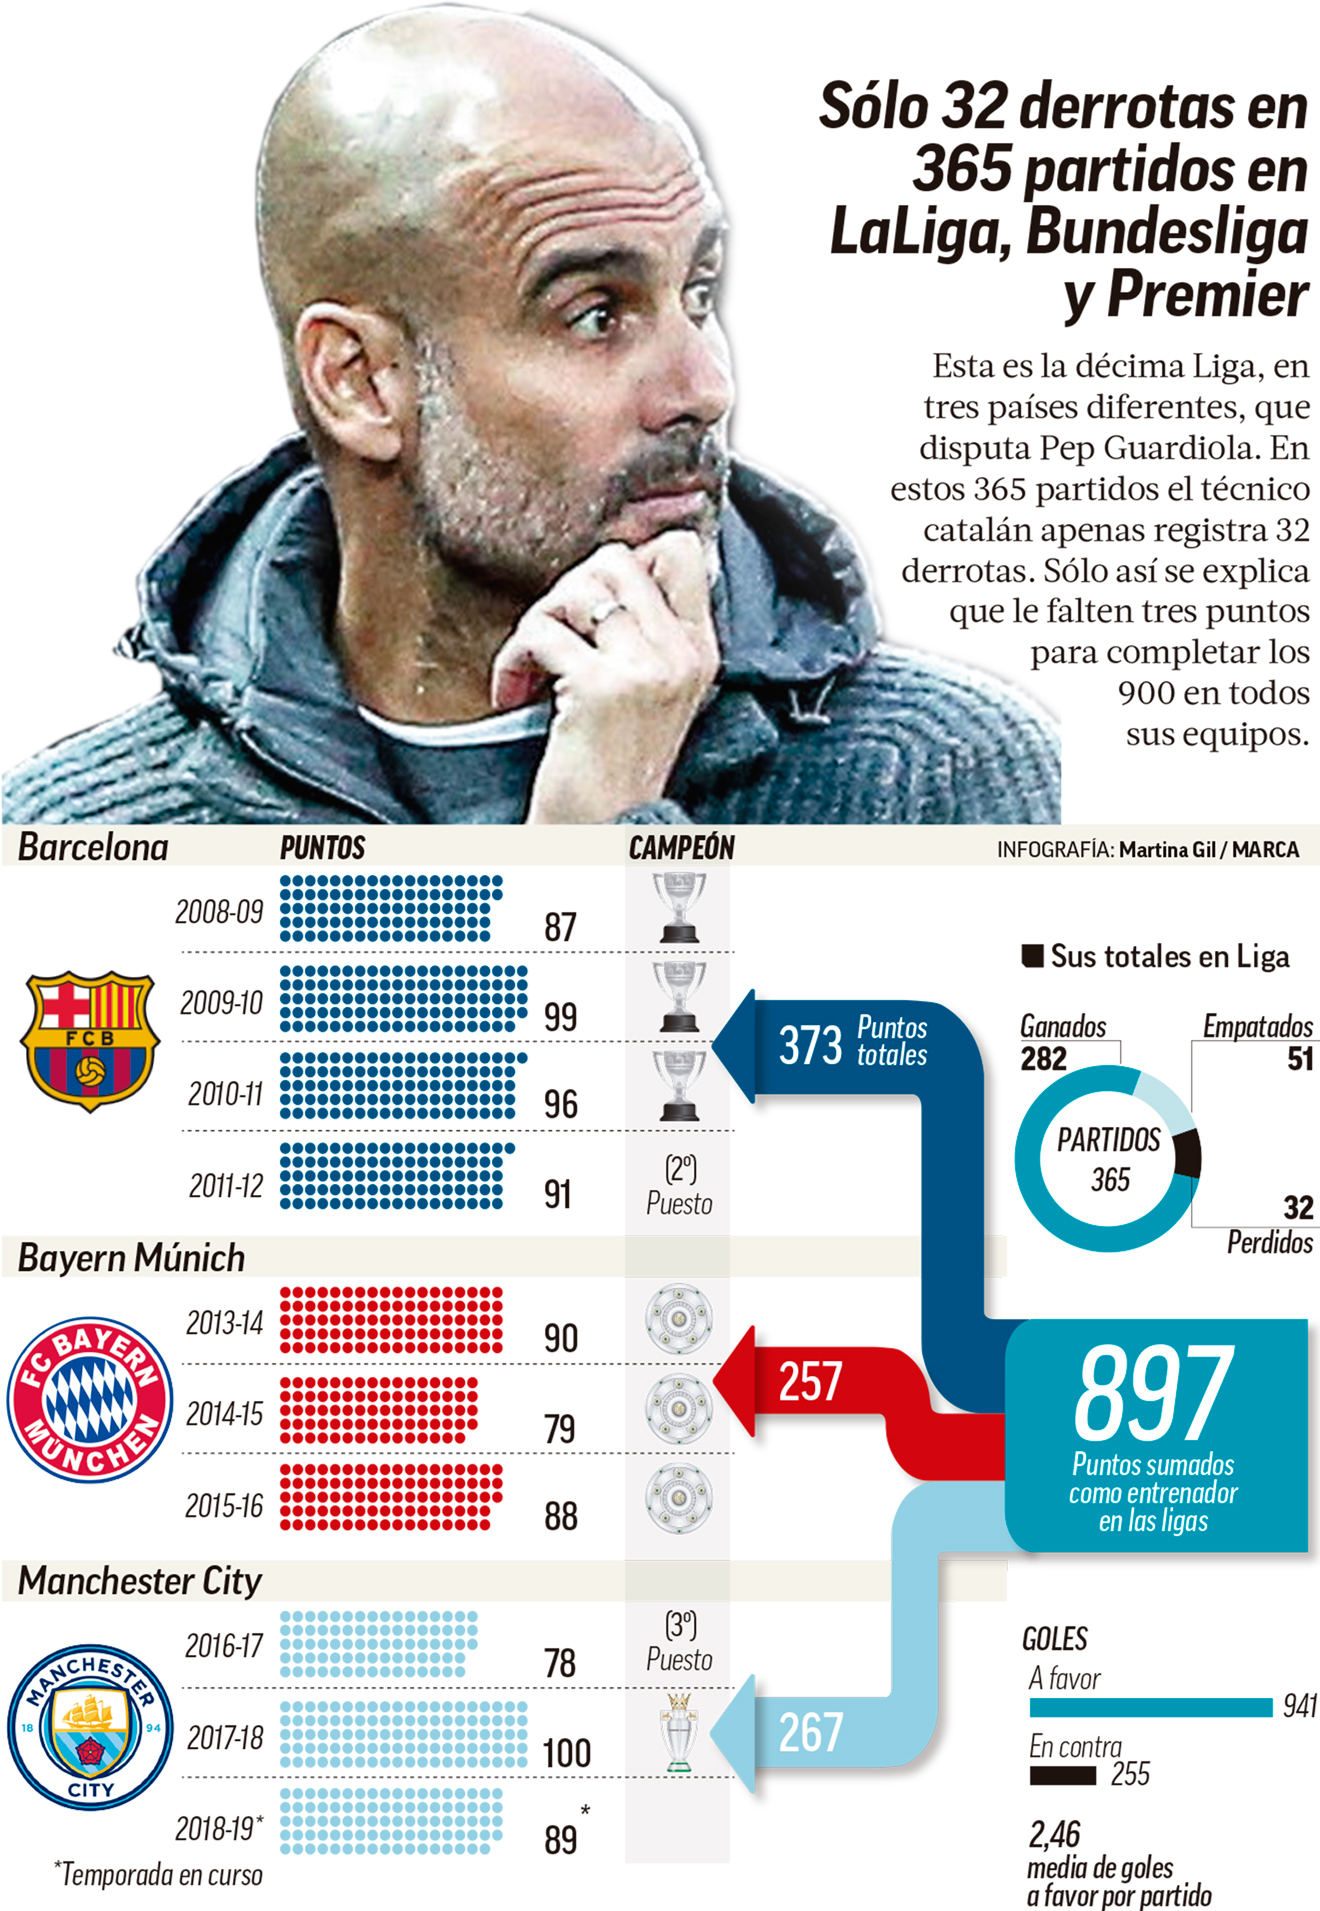 Premier League: Guardiola, una carrera bestial en Ligas: 897 puntos y 32 derrotas en 365 partidos | Marca.com